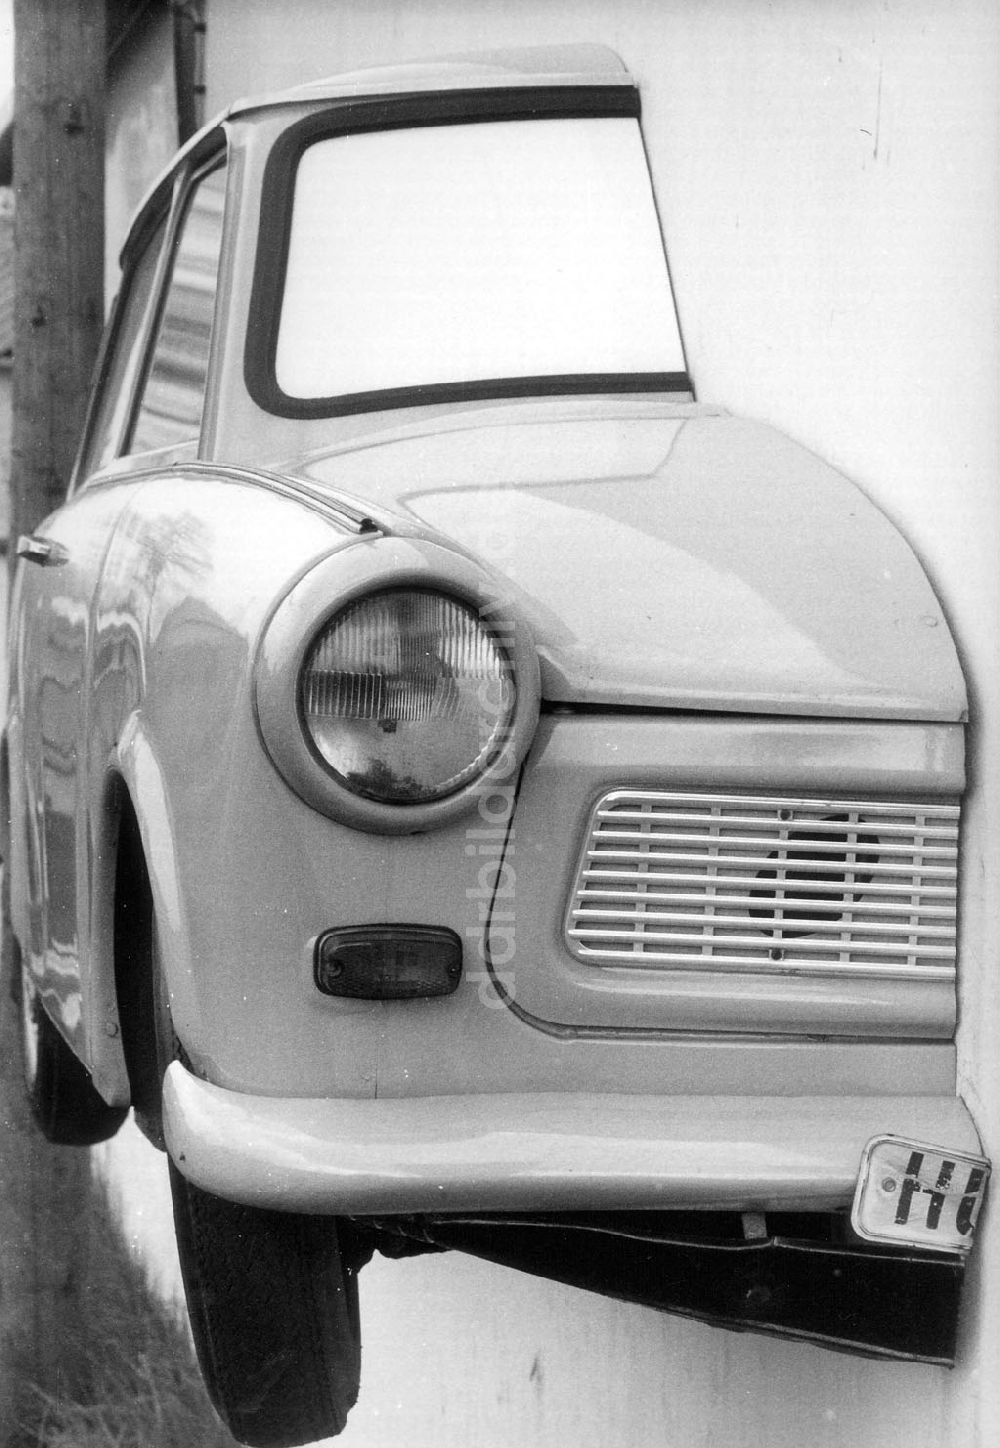 DDR-Bildarchiv: Loburg - Halbierter Trabant eines Autohändlers an der Mauer seines Betriebsgeländes in Loburg (Sachsen-Anhalt) 07.05.1992